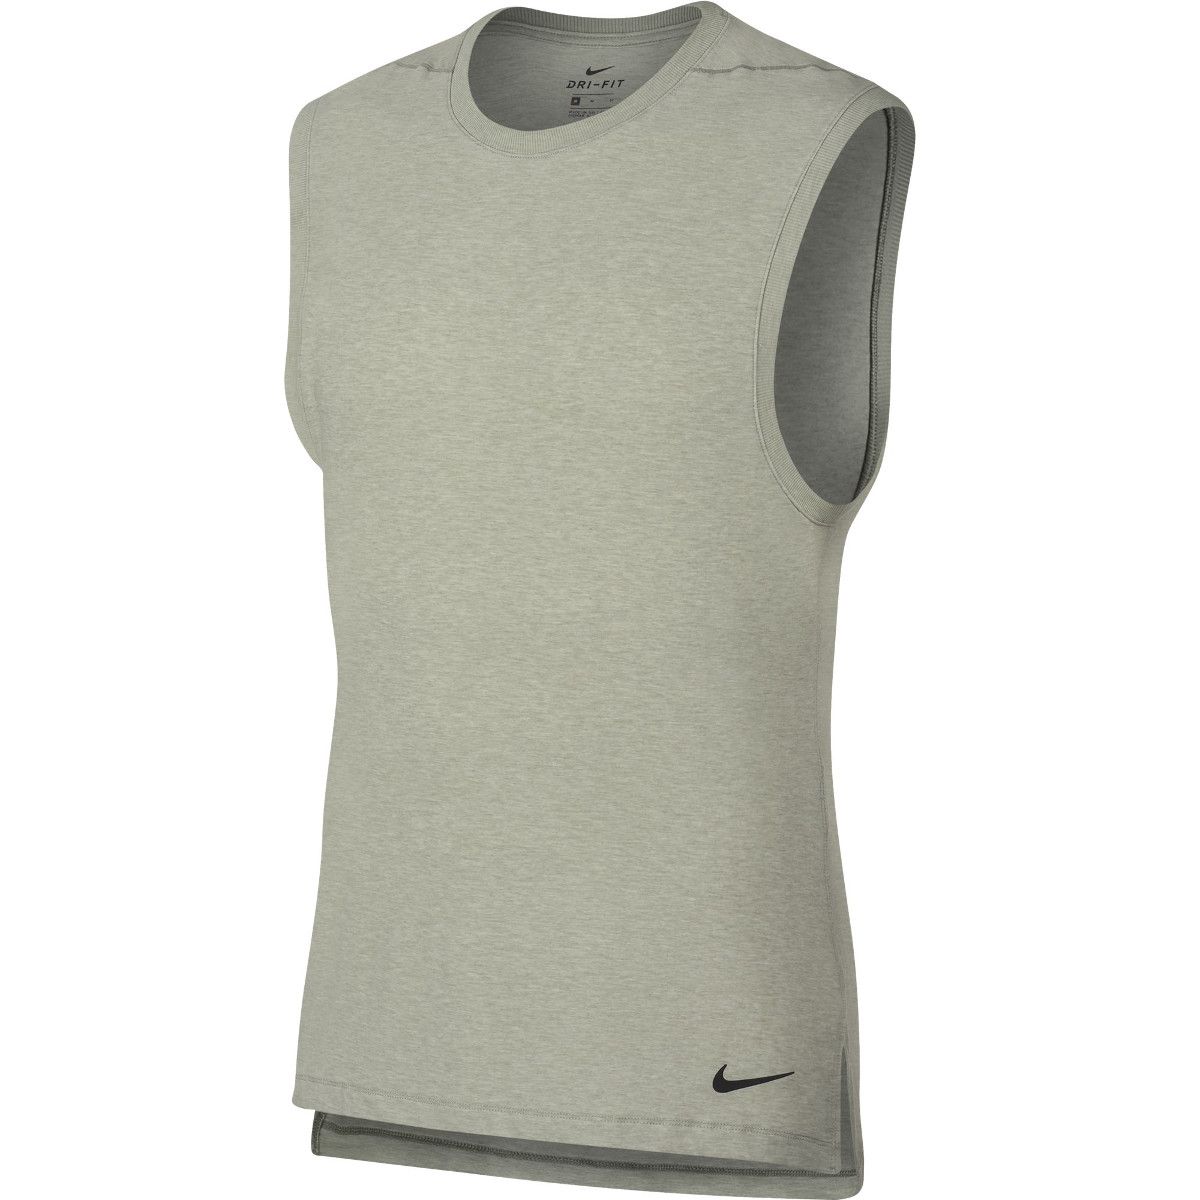 Nike Mens Dry Yoga Vest